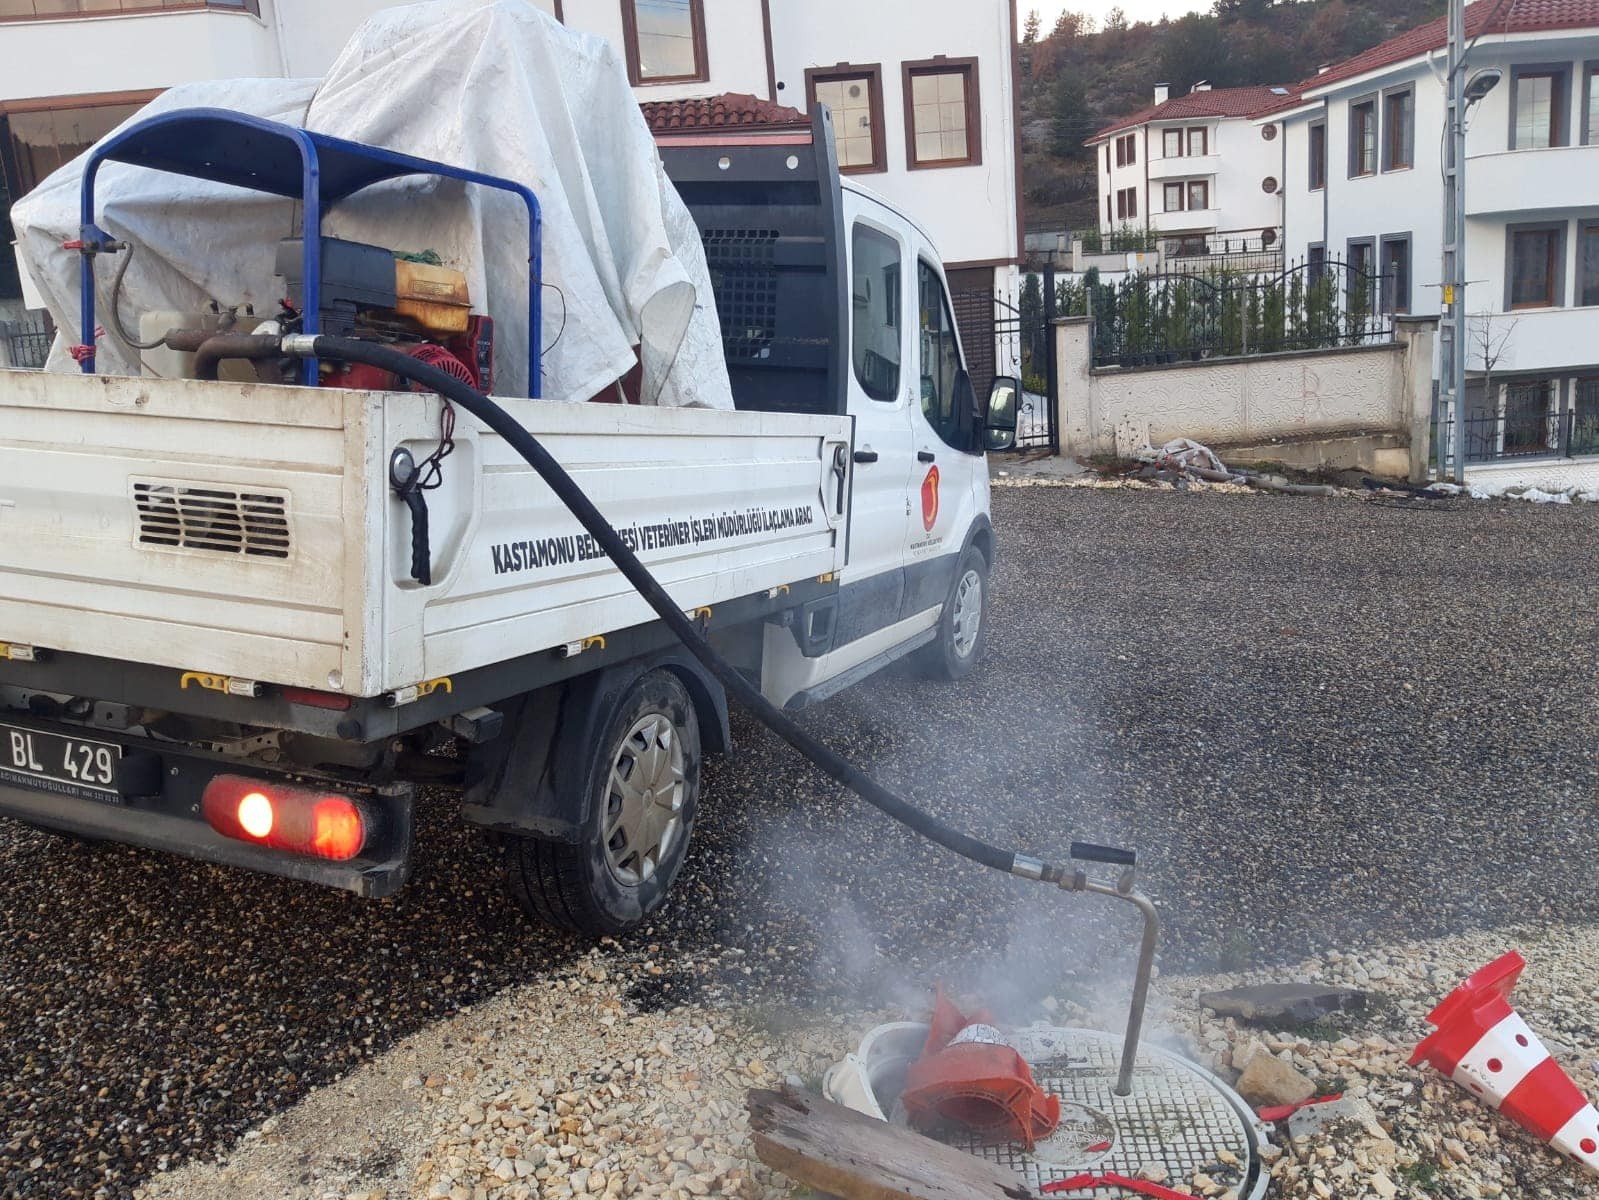 Kastamonu Belediyesi vektöre karşı ilaçlama çalışmalarını sürdürüyor #kastamonu